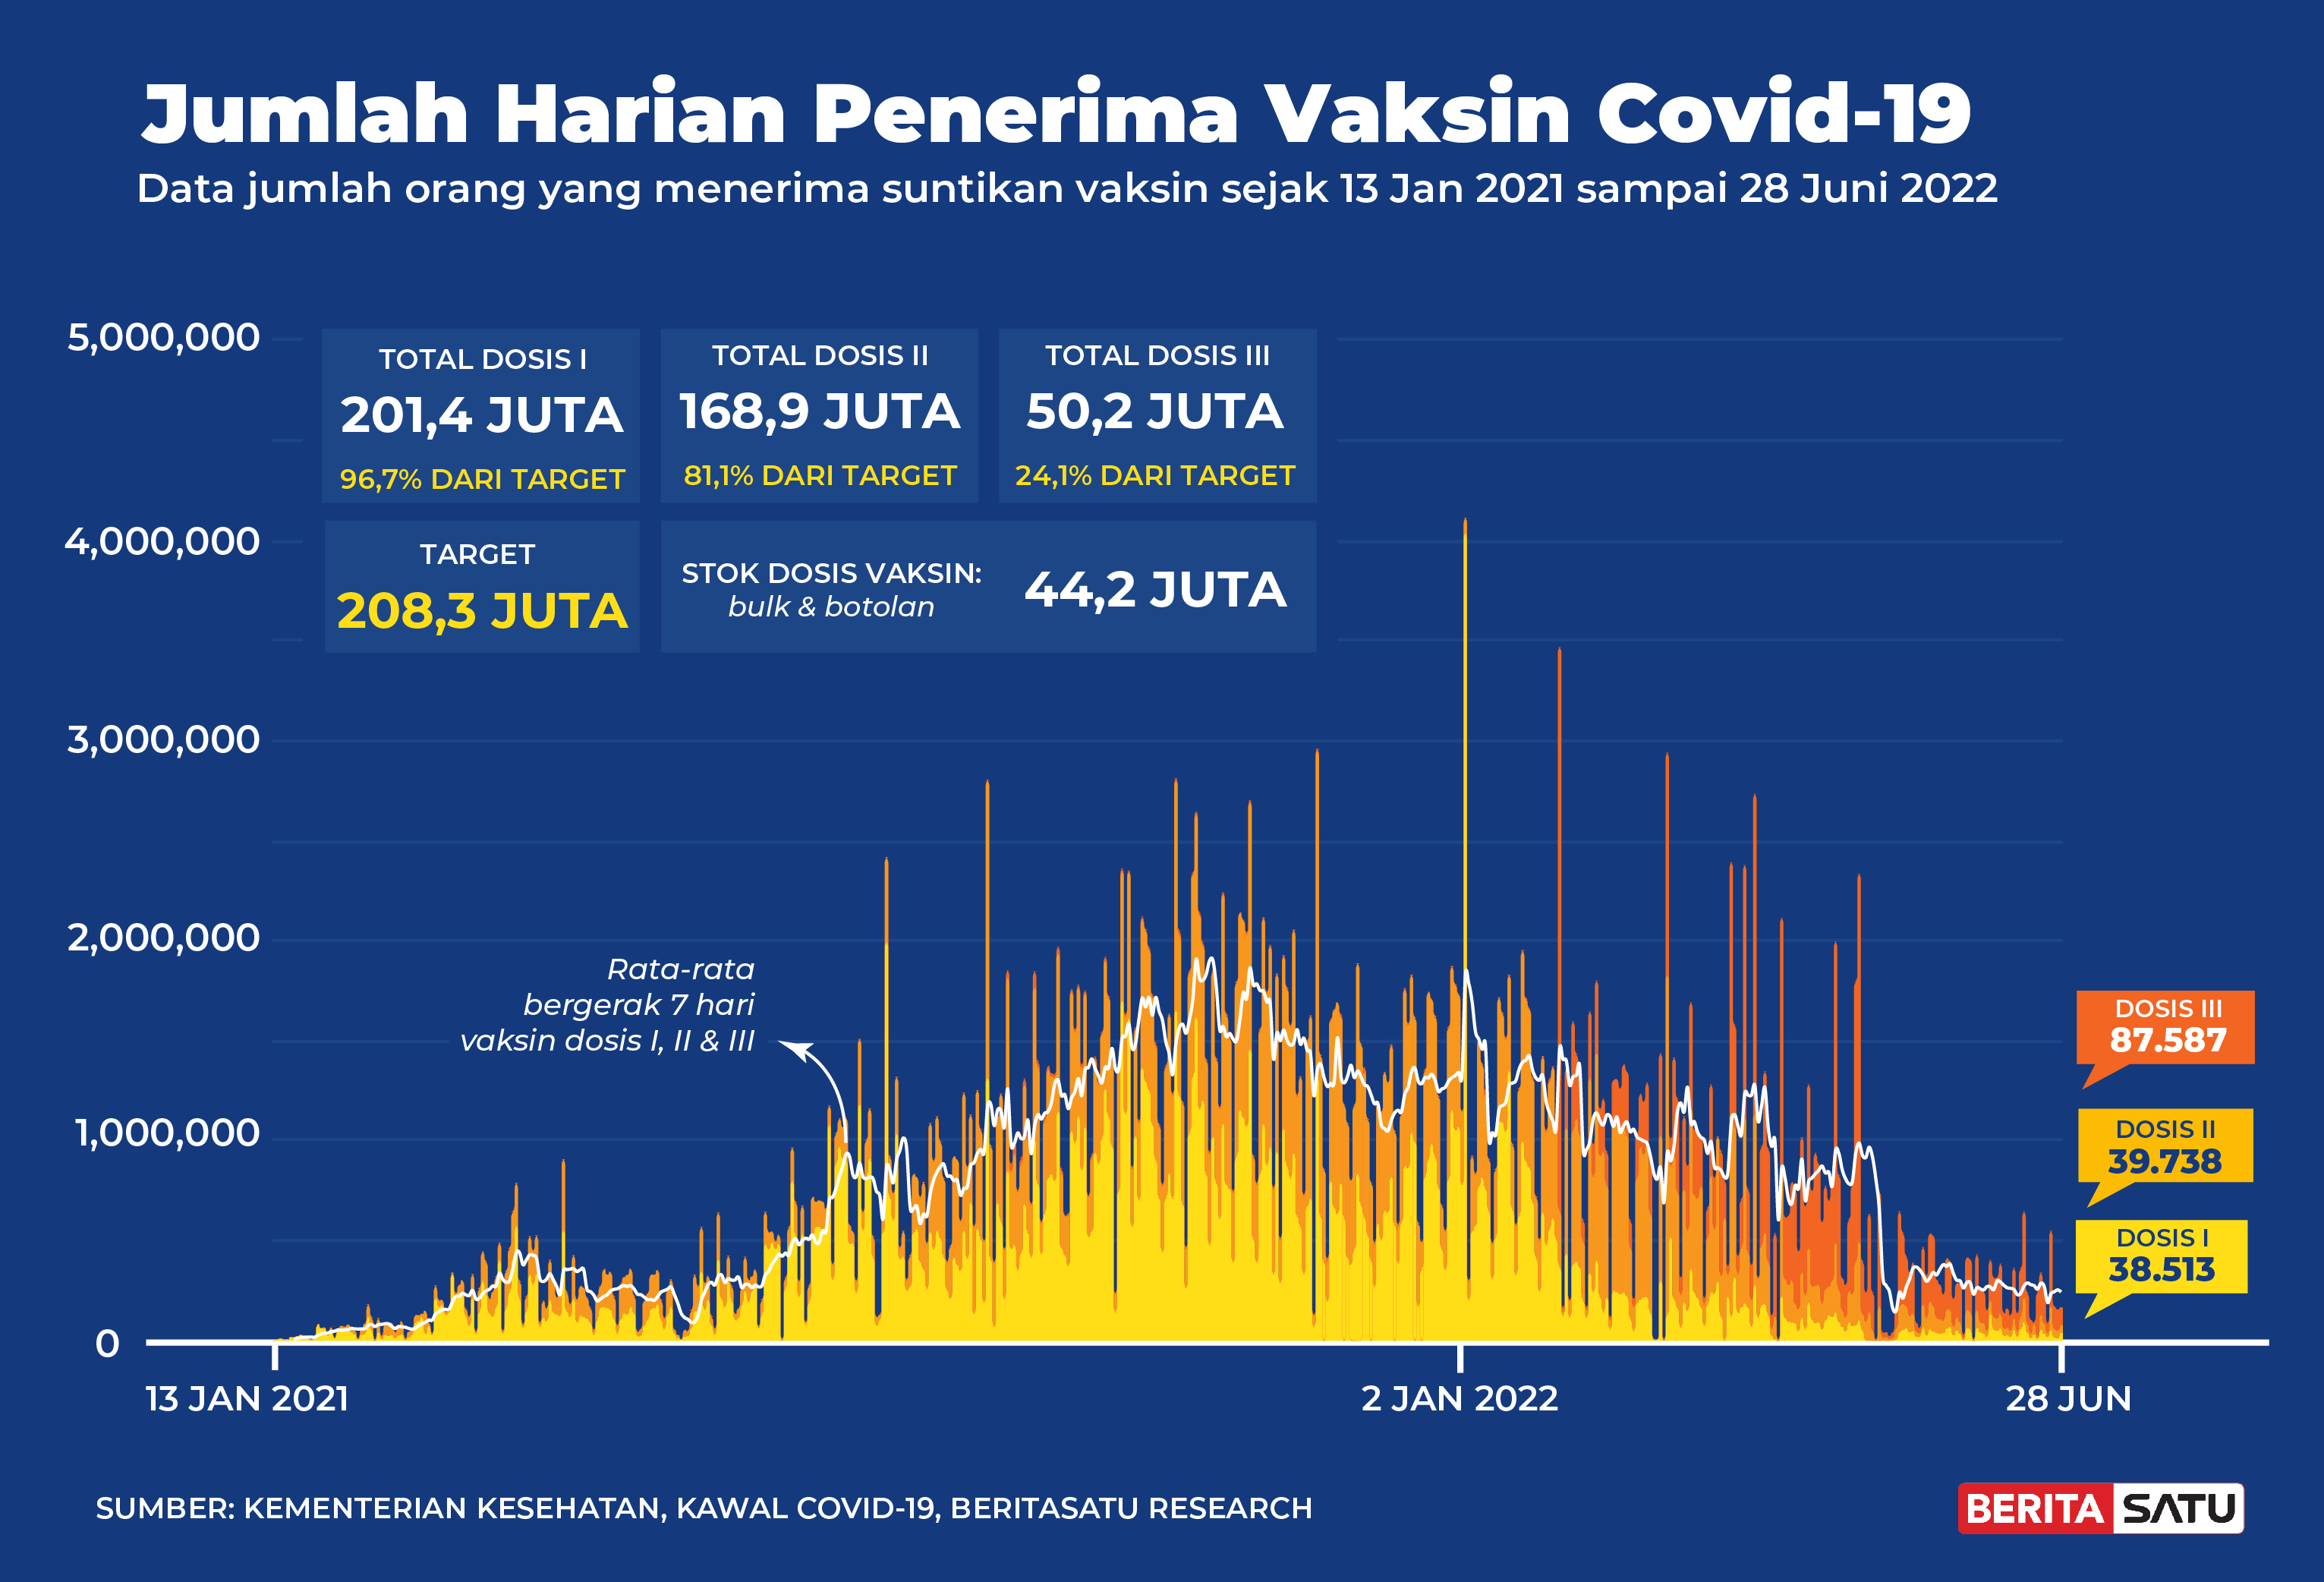 Penerima Vaksin Covid-19 di Indonesia sampai 28 Juni 2022